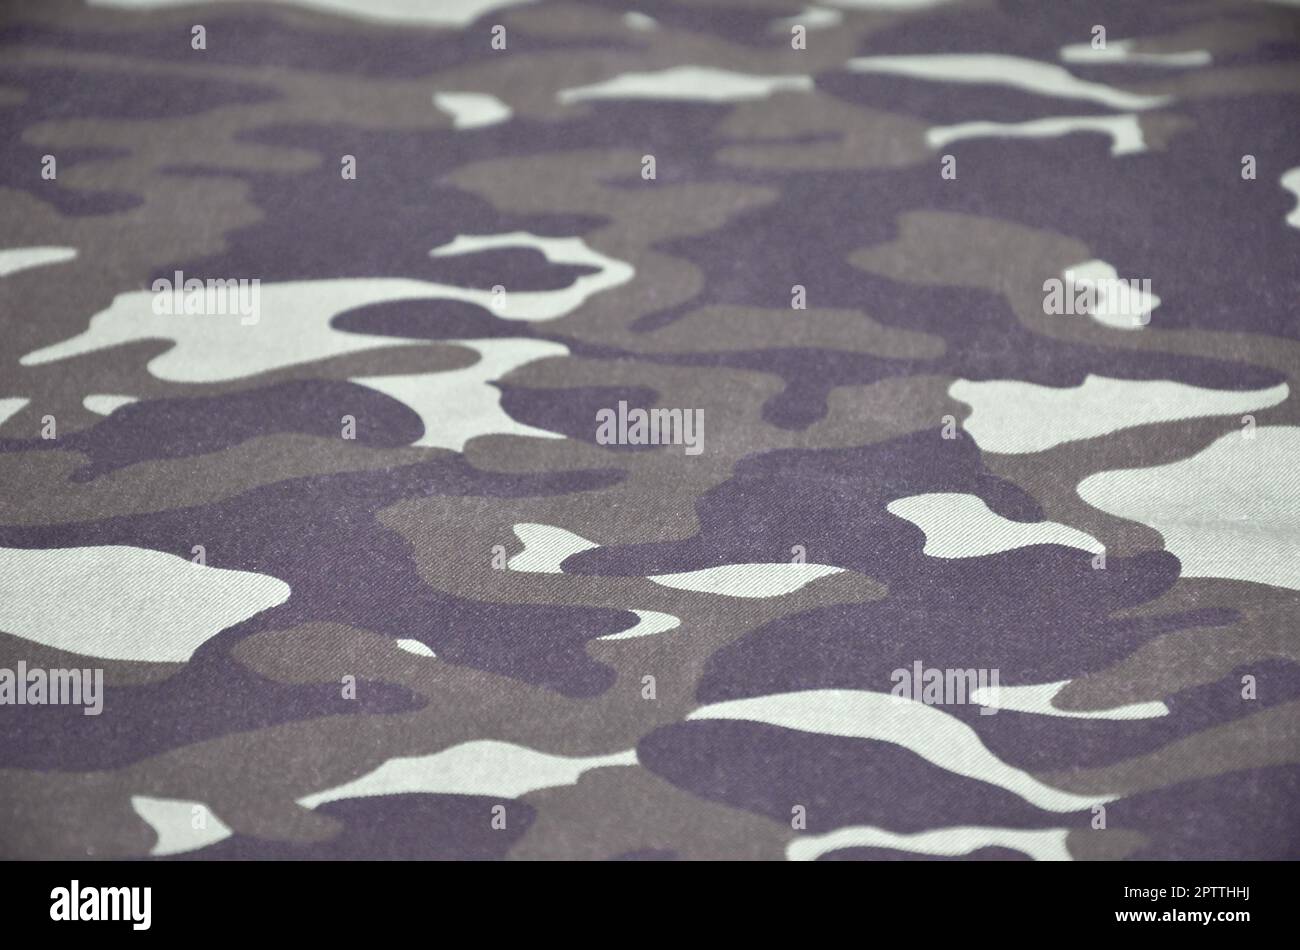 La texture de tissu avec un camouflage peint en couleurs du marais. Image de fond de l'armée. Textile pattern de tissu camouflage militaire Banque D'Images